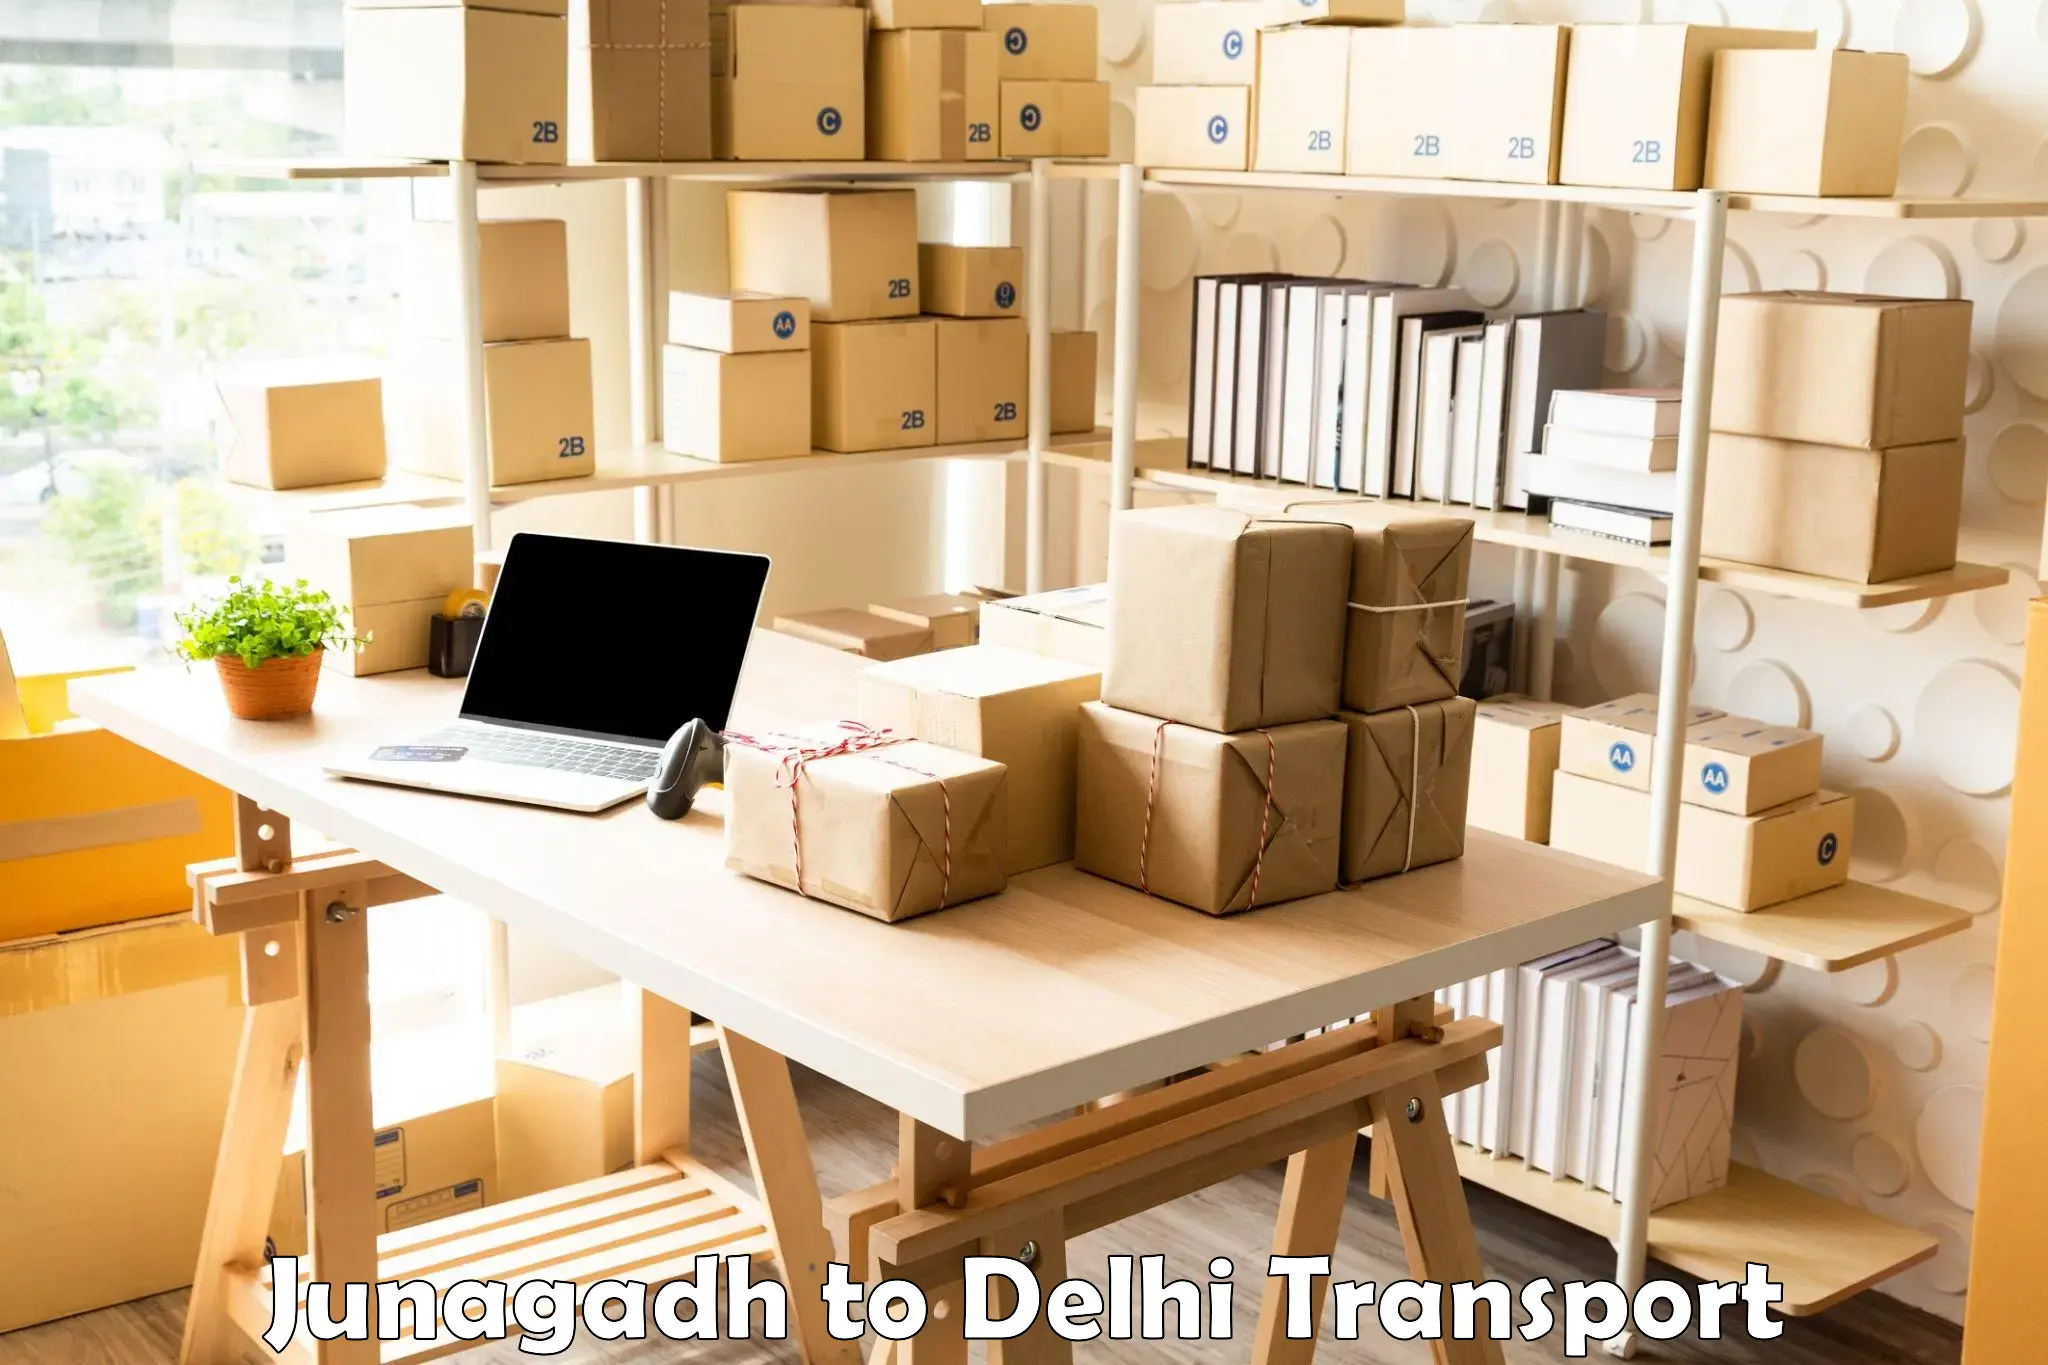 Online transport booking Junagadh to NCR